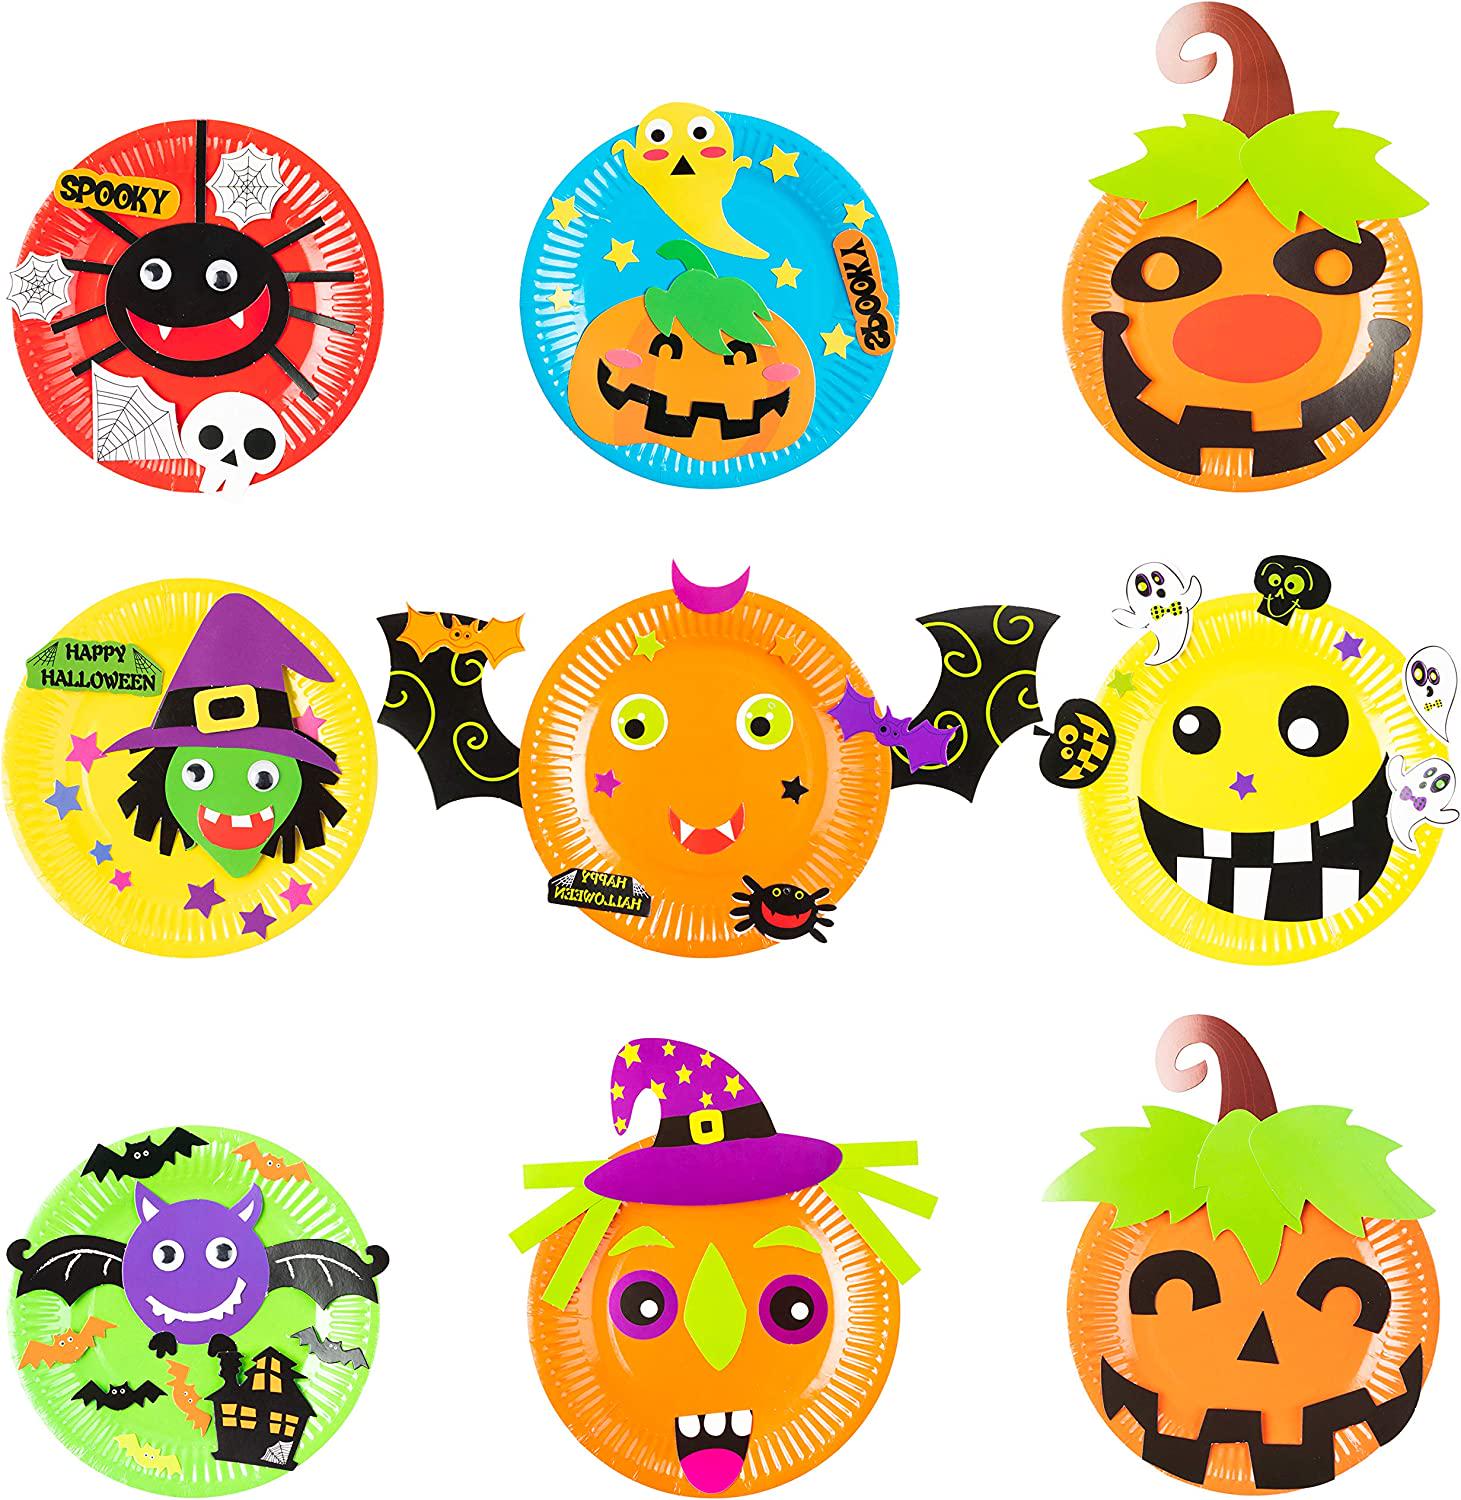 MALLMALL6, MALLMALL6 9Pcs Halloween Paper Plate Art Kits for Kids DIY Craft Sticker Card Games Activity Handmade 3D Pumpkin with Body Paper Crafts Project Classroom Supplies for Preschool Toddler Boys Girls